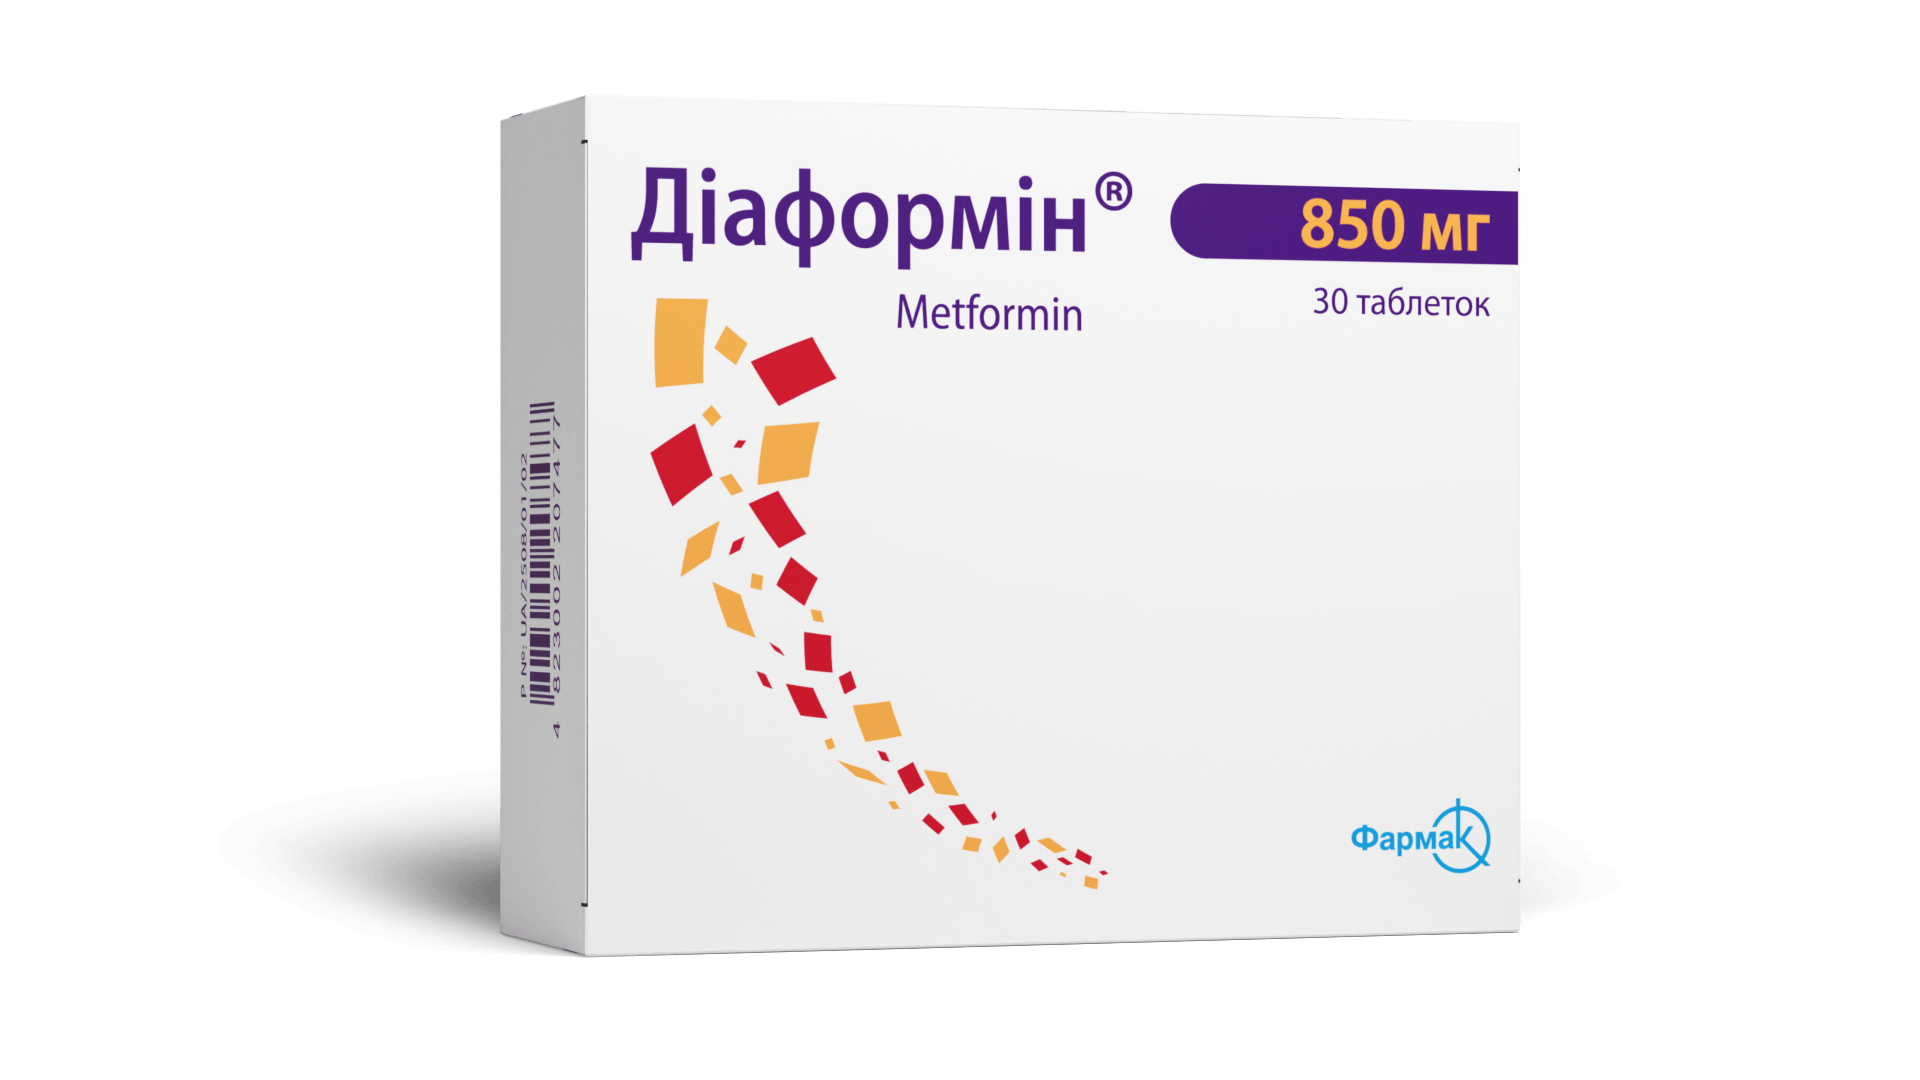 Диаформин® 850 мг (1)